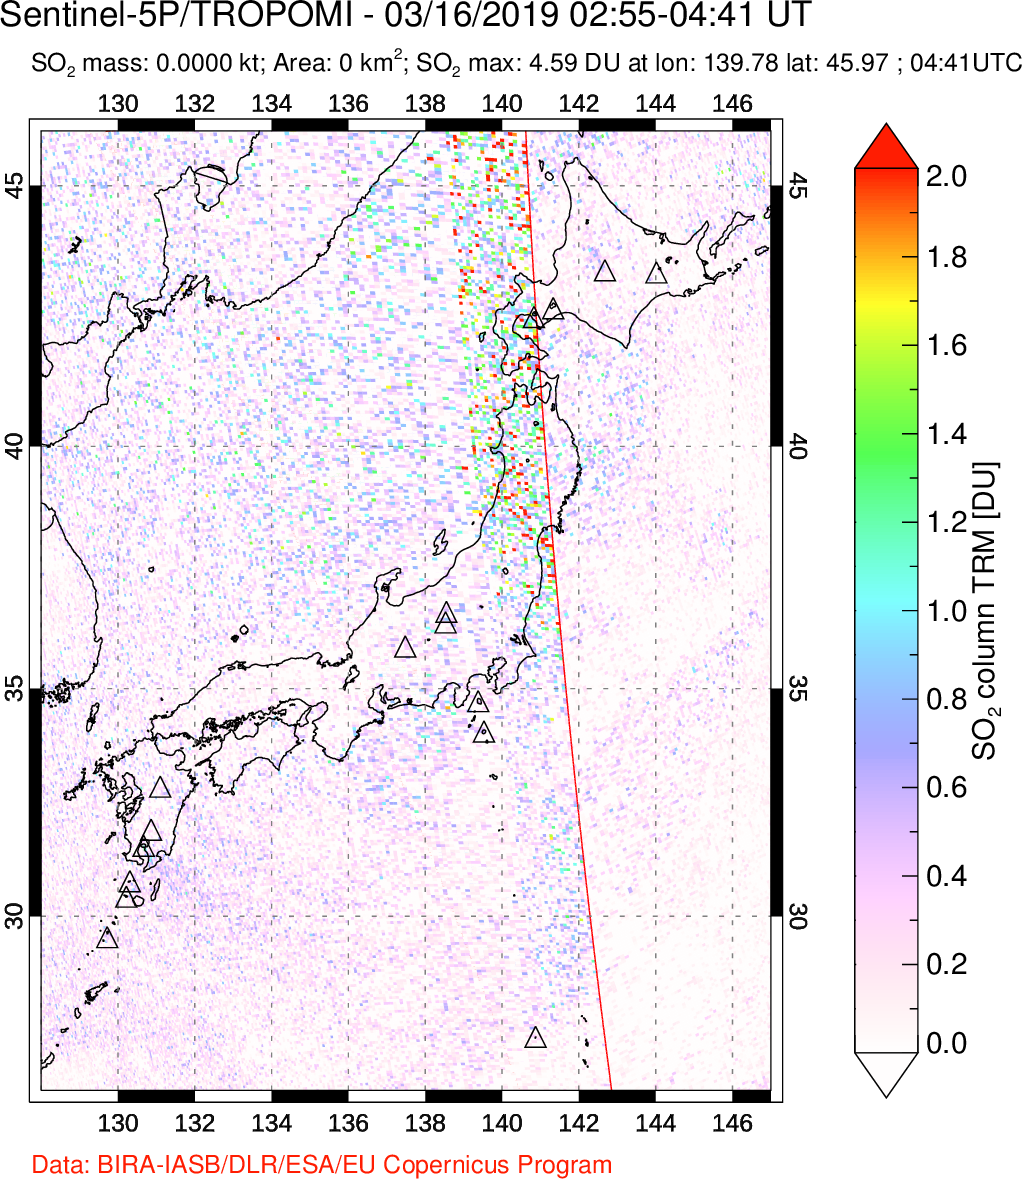 A sulfur dioxide image over Japan on Mar 16, 2019.